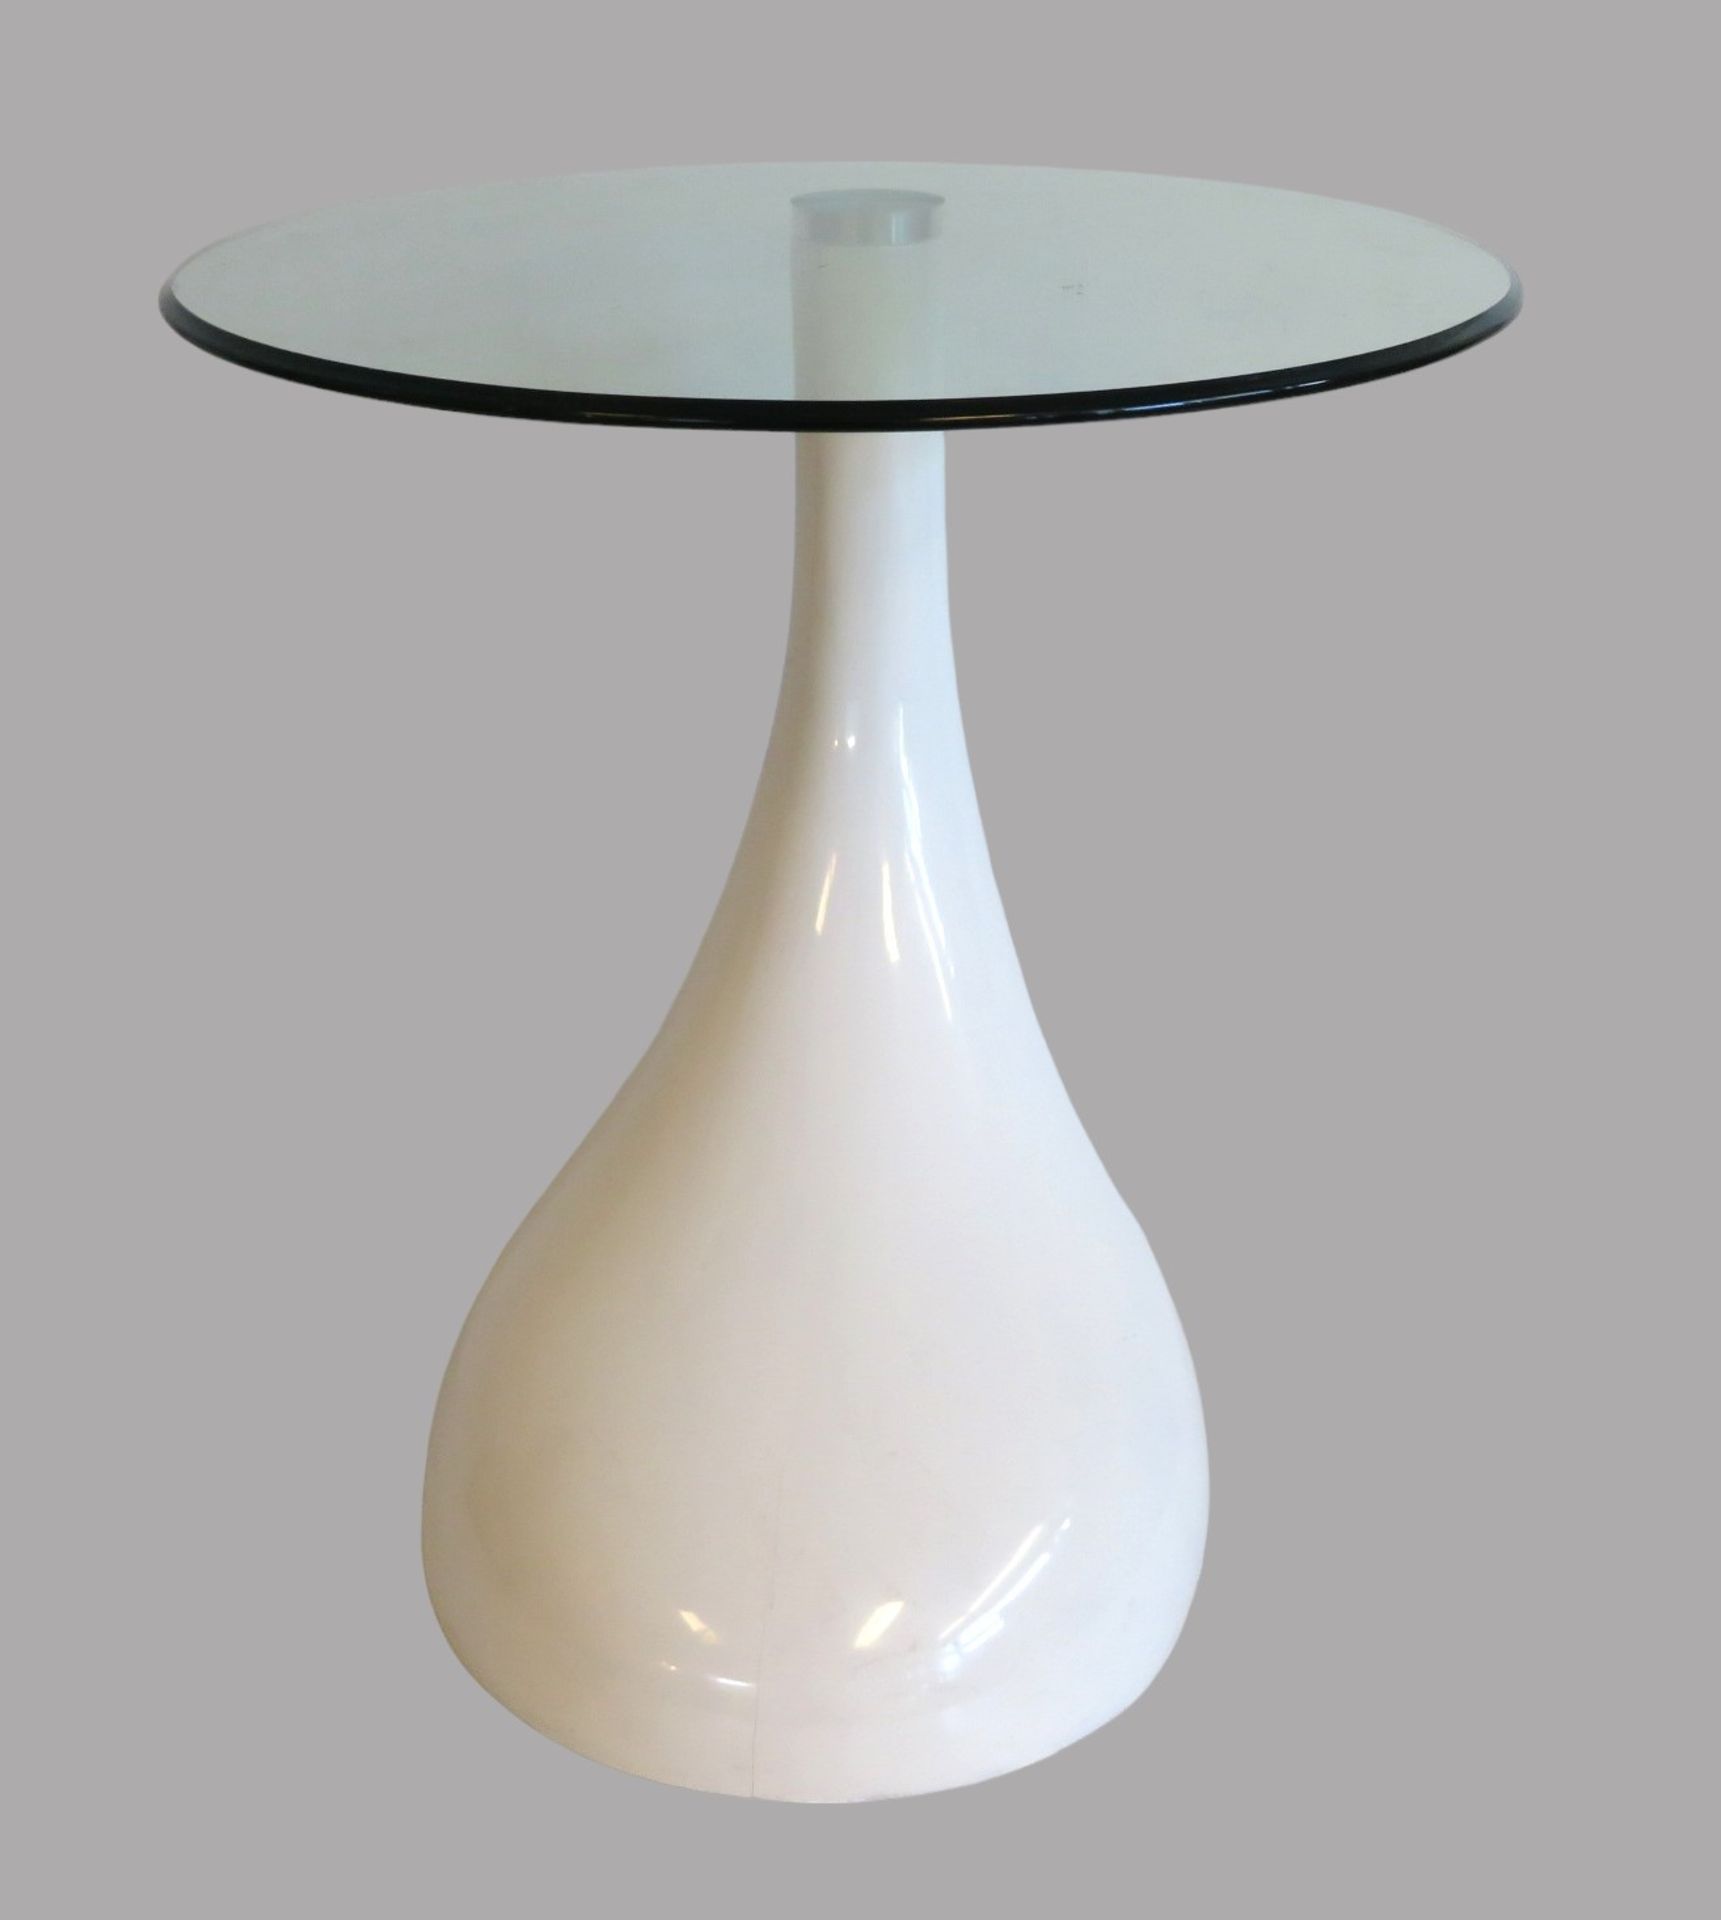 Designer Tisch, wohl Colani, weiß gelackter Fuss mit Glasplatte, Glas mit kleineren Gebrauchsspuren - Bild 2 aus 3